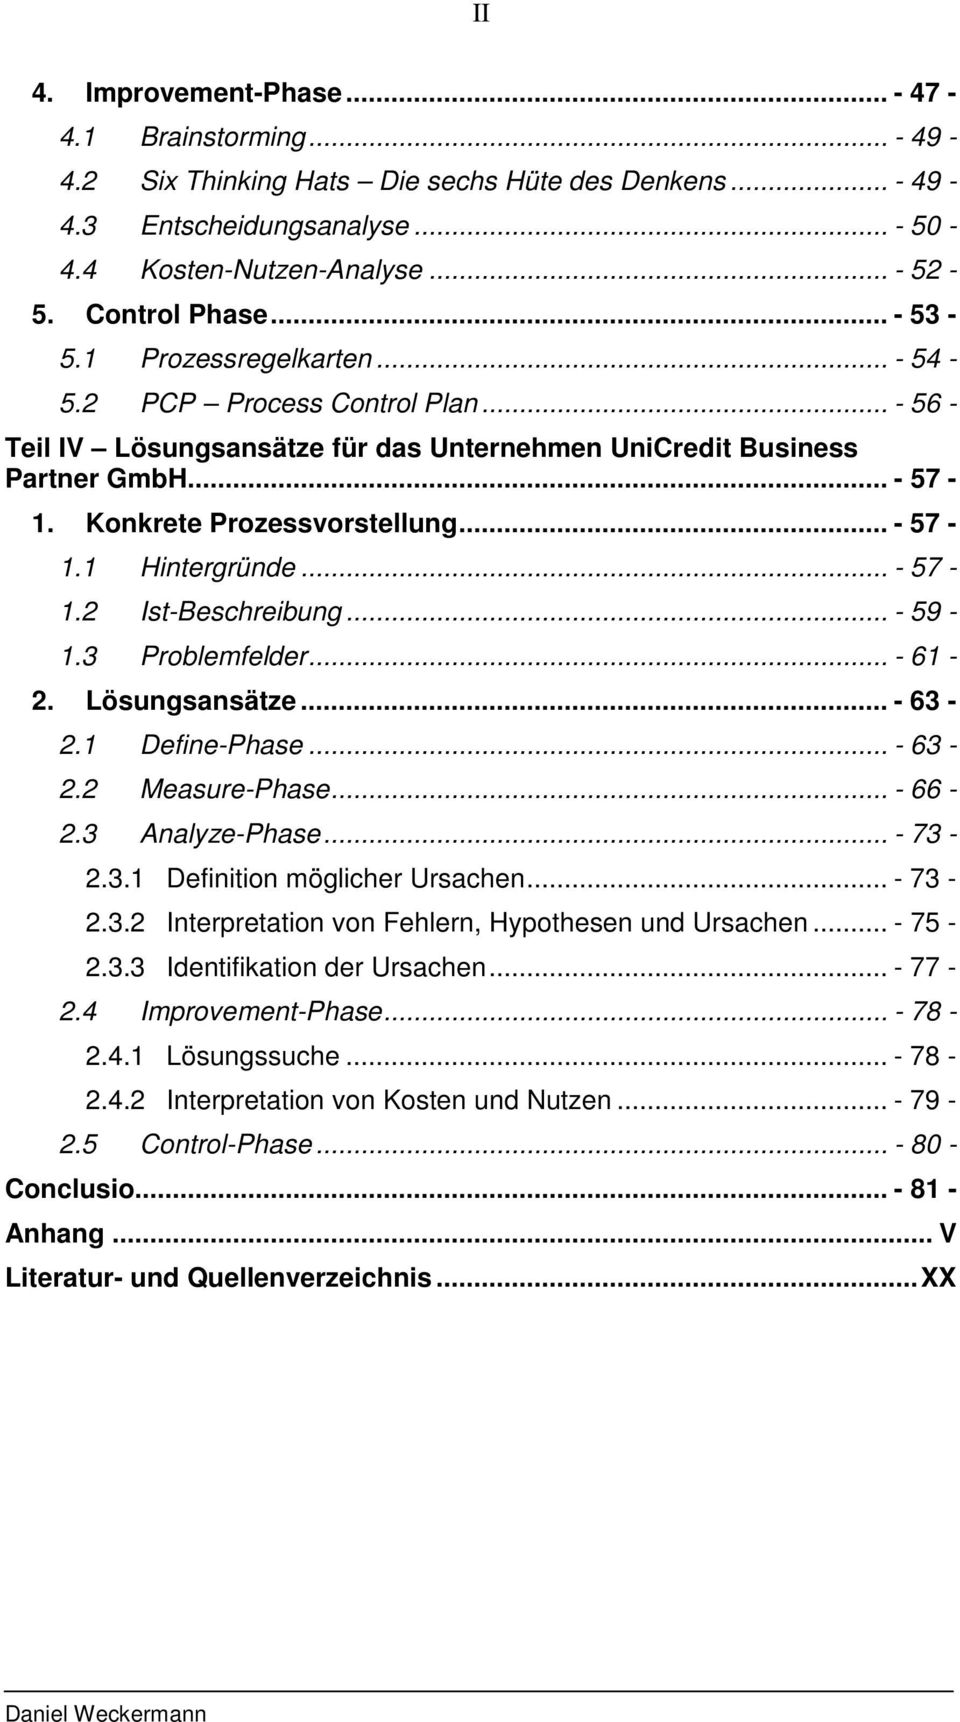 Bachelorarbeit Daniel Weckermann Prozessanalyse Und Verbesserung Mit